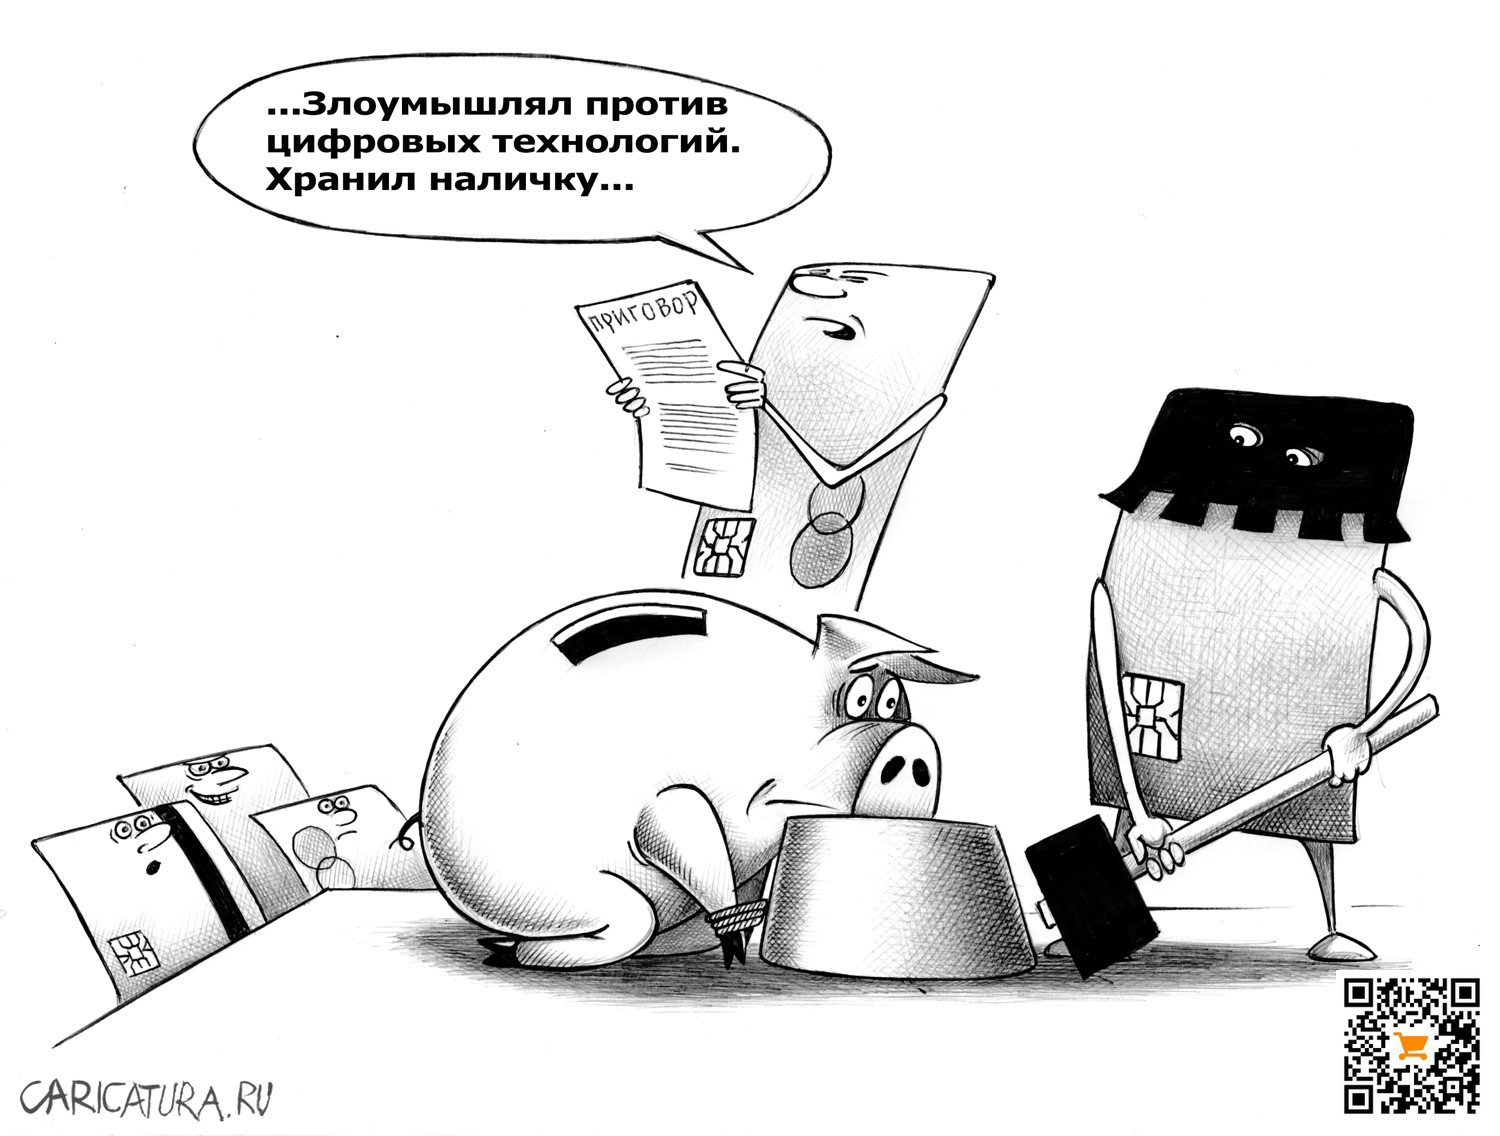 Карикатура "Приговор", Сергей Корсун